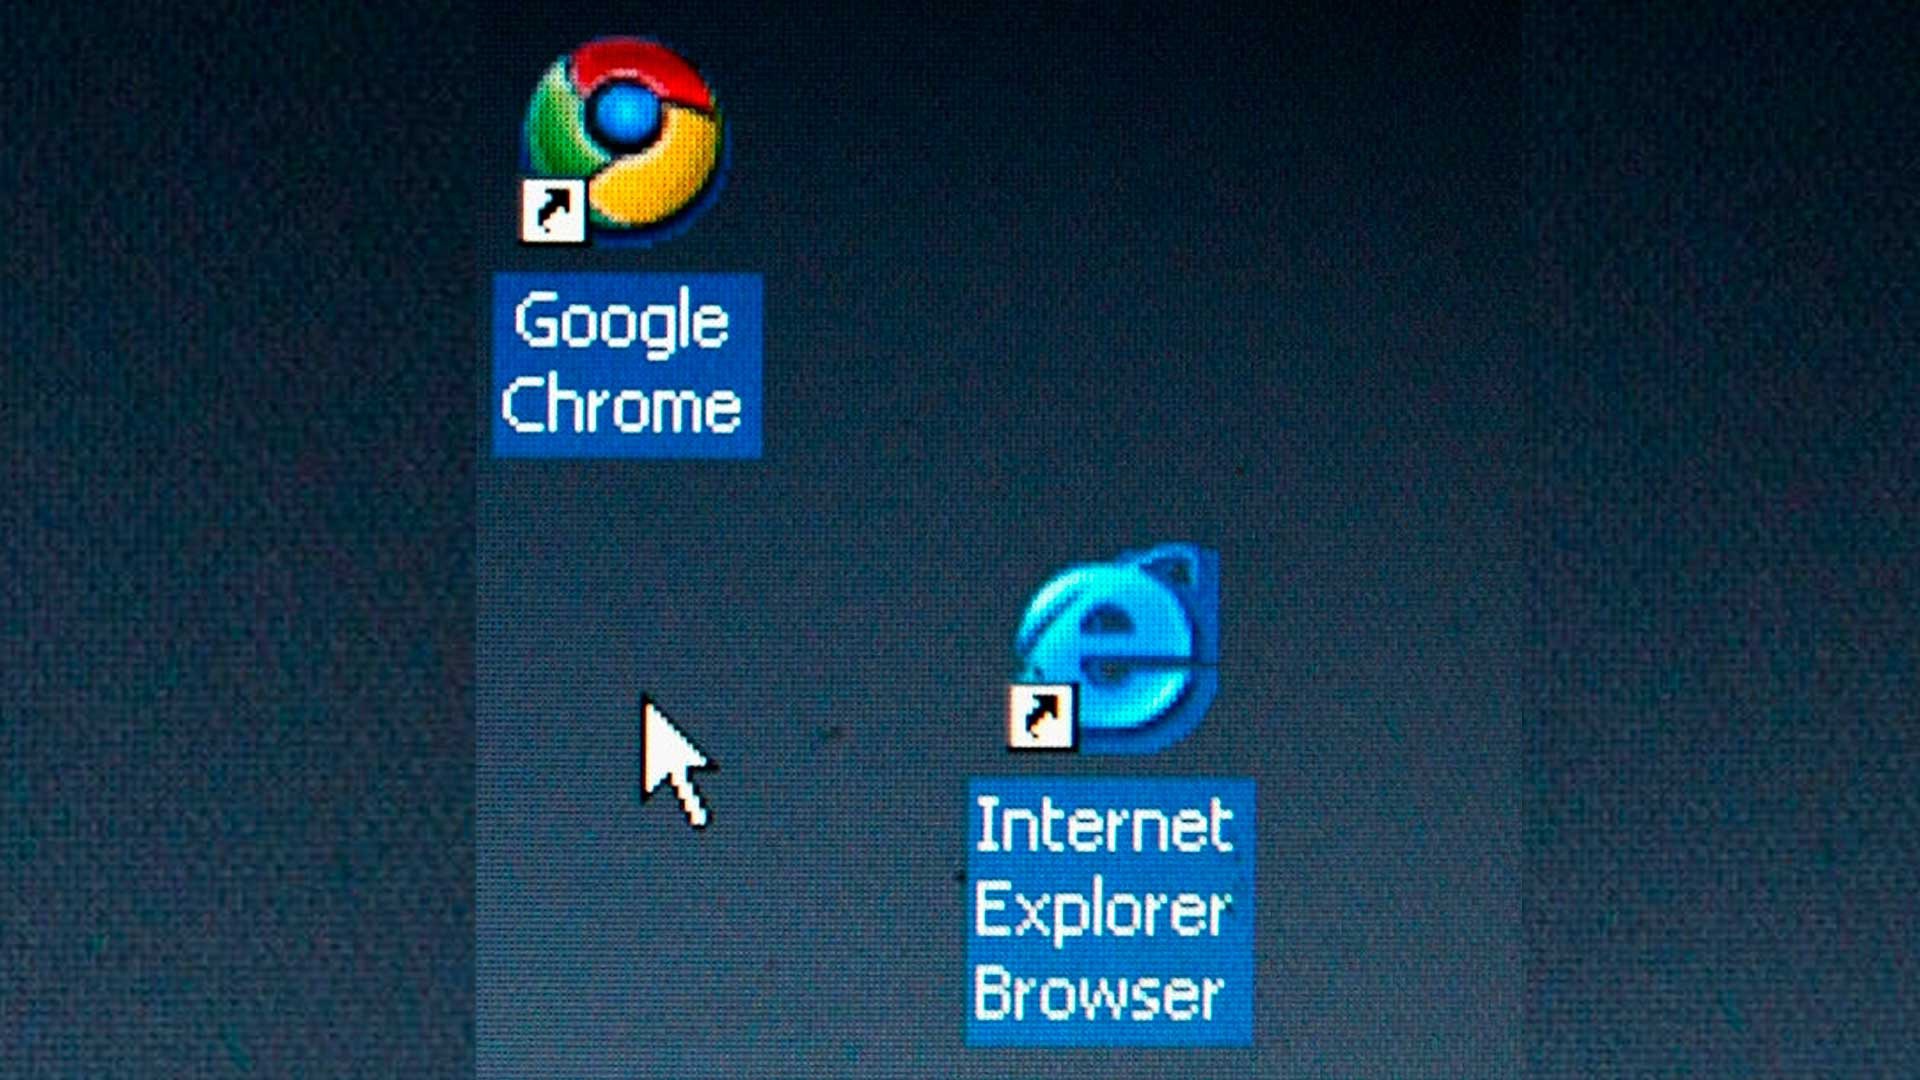 Este gráfico sensacional mostra a ascensão e queda do Internet Explorer e a consolidação do Chrome